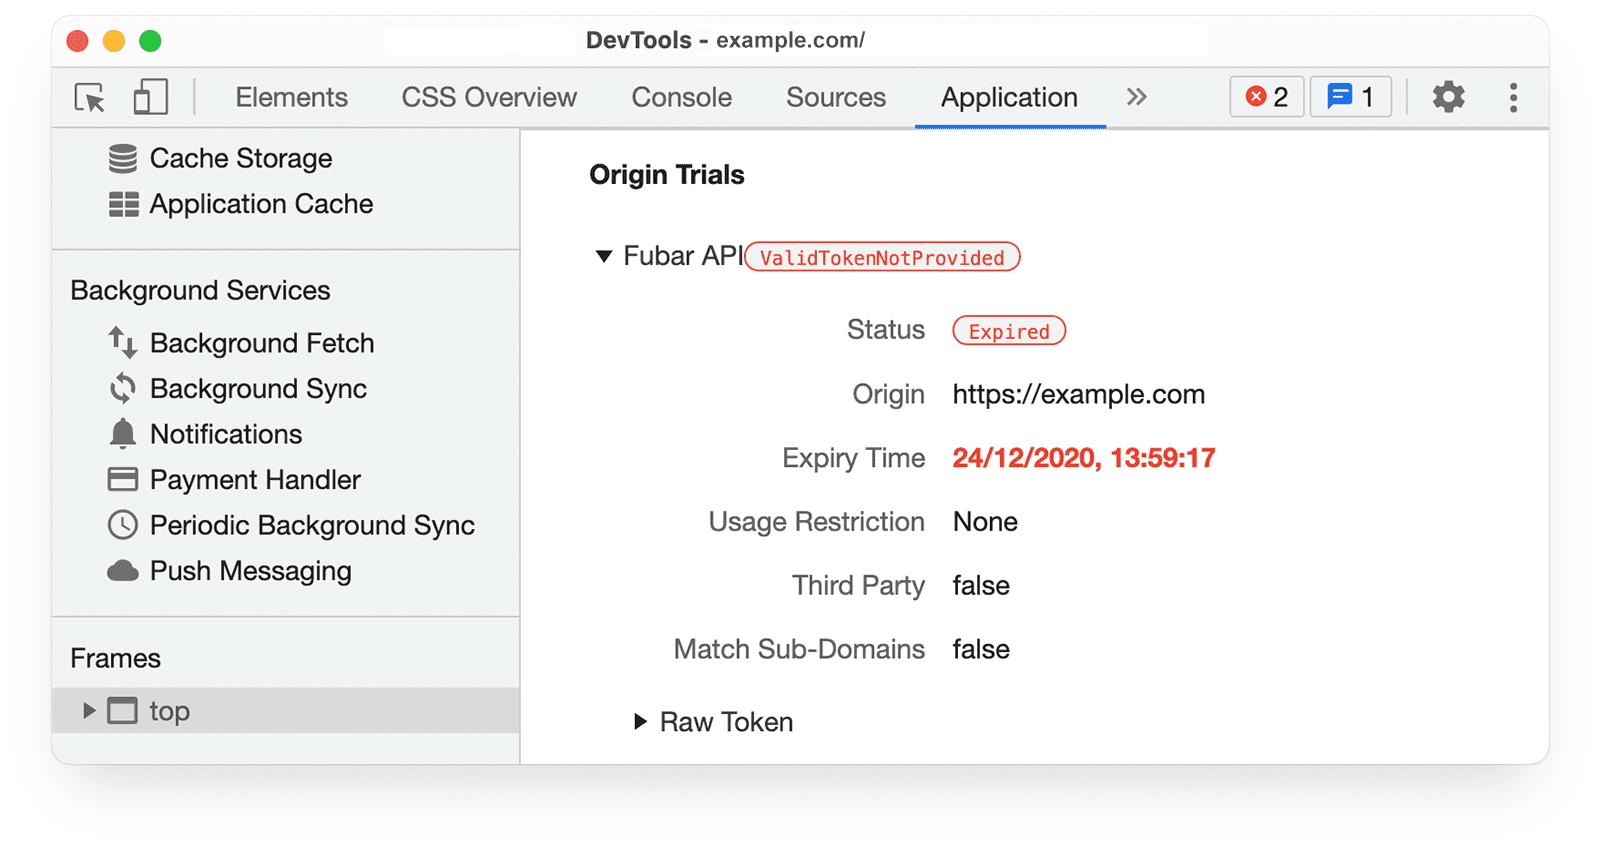 DevTools Chrome 
informasi uji coba origin di panel Application yang menampilkan ValidTokenNotProvided dan Status Kedaluwarsa